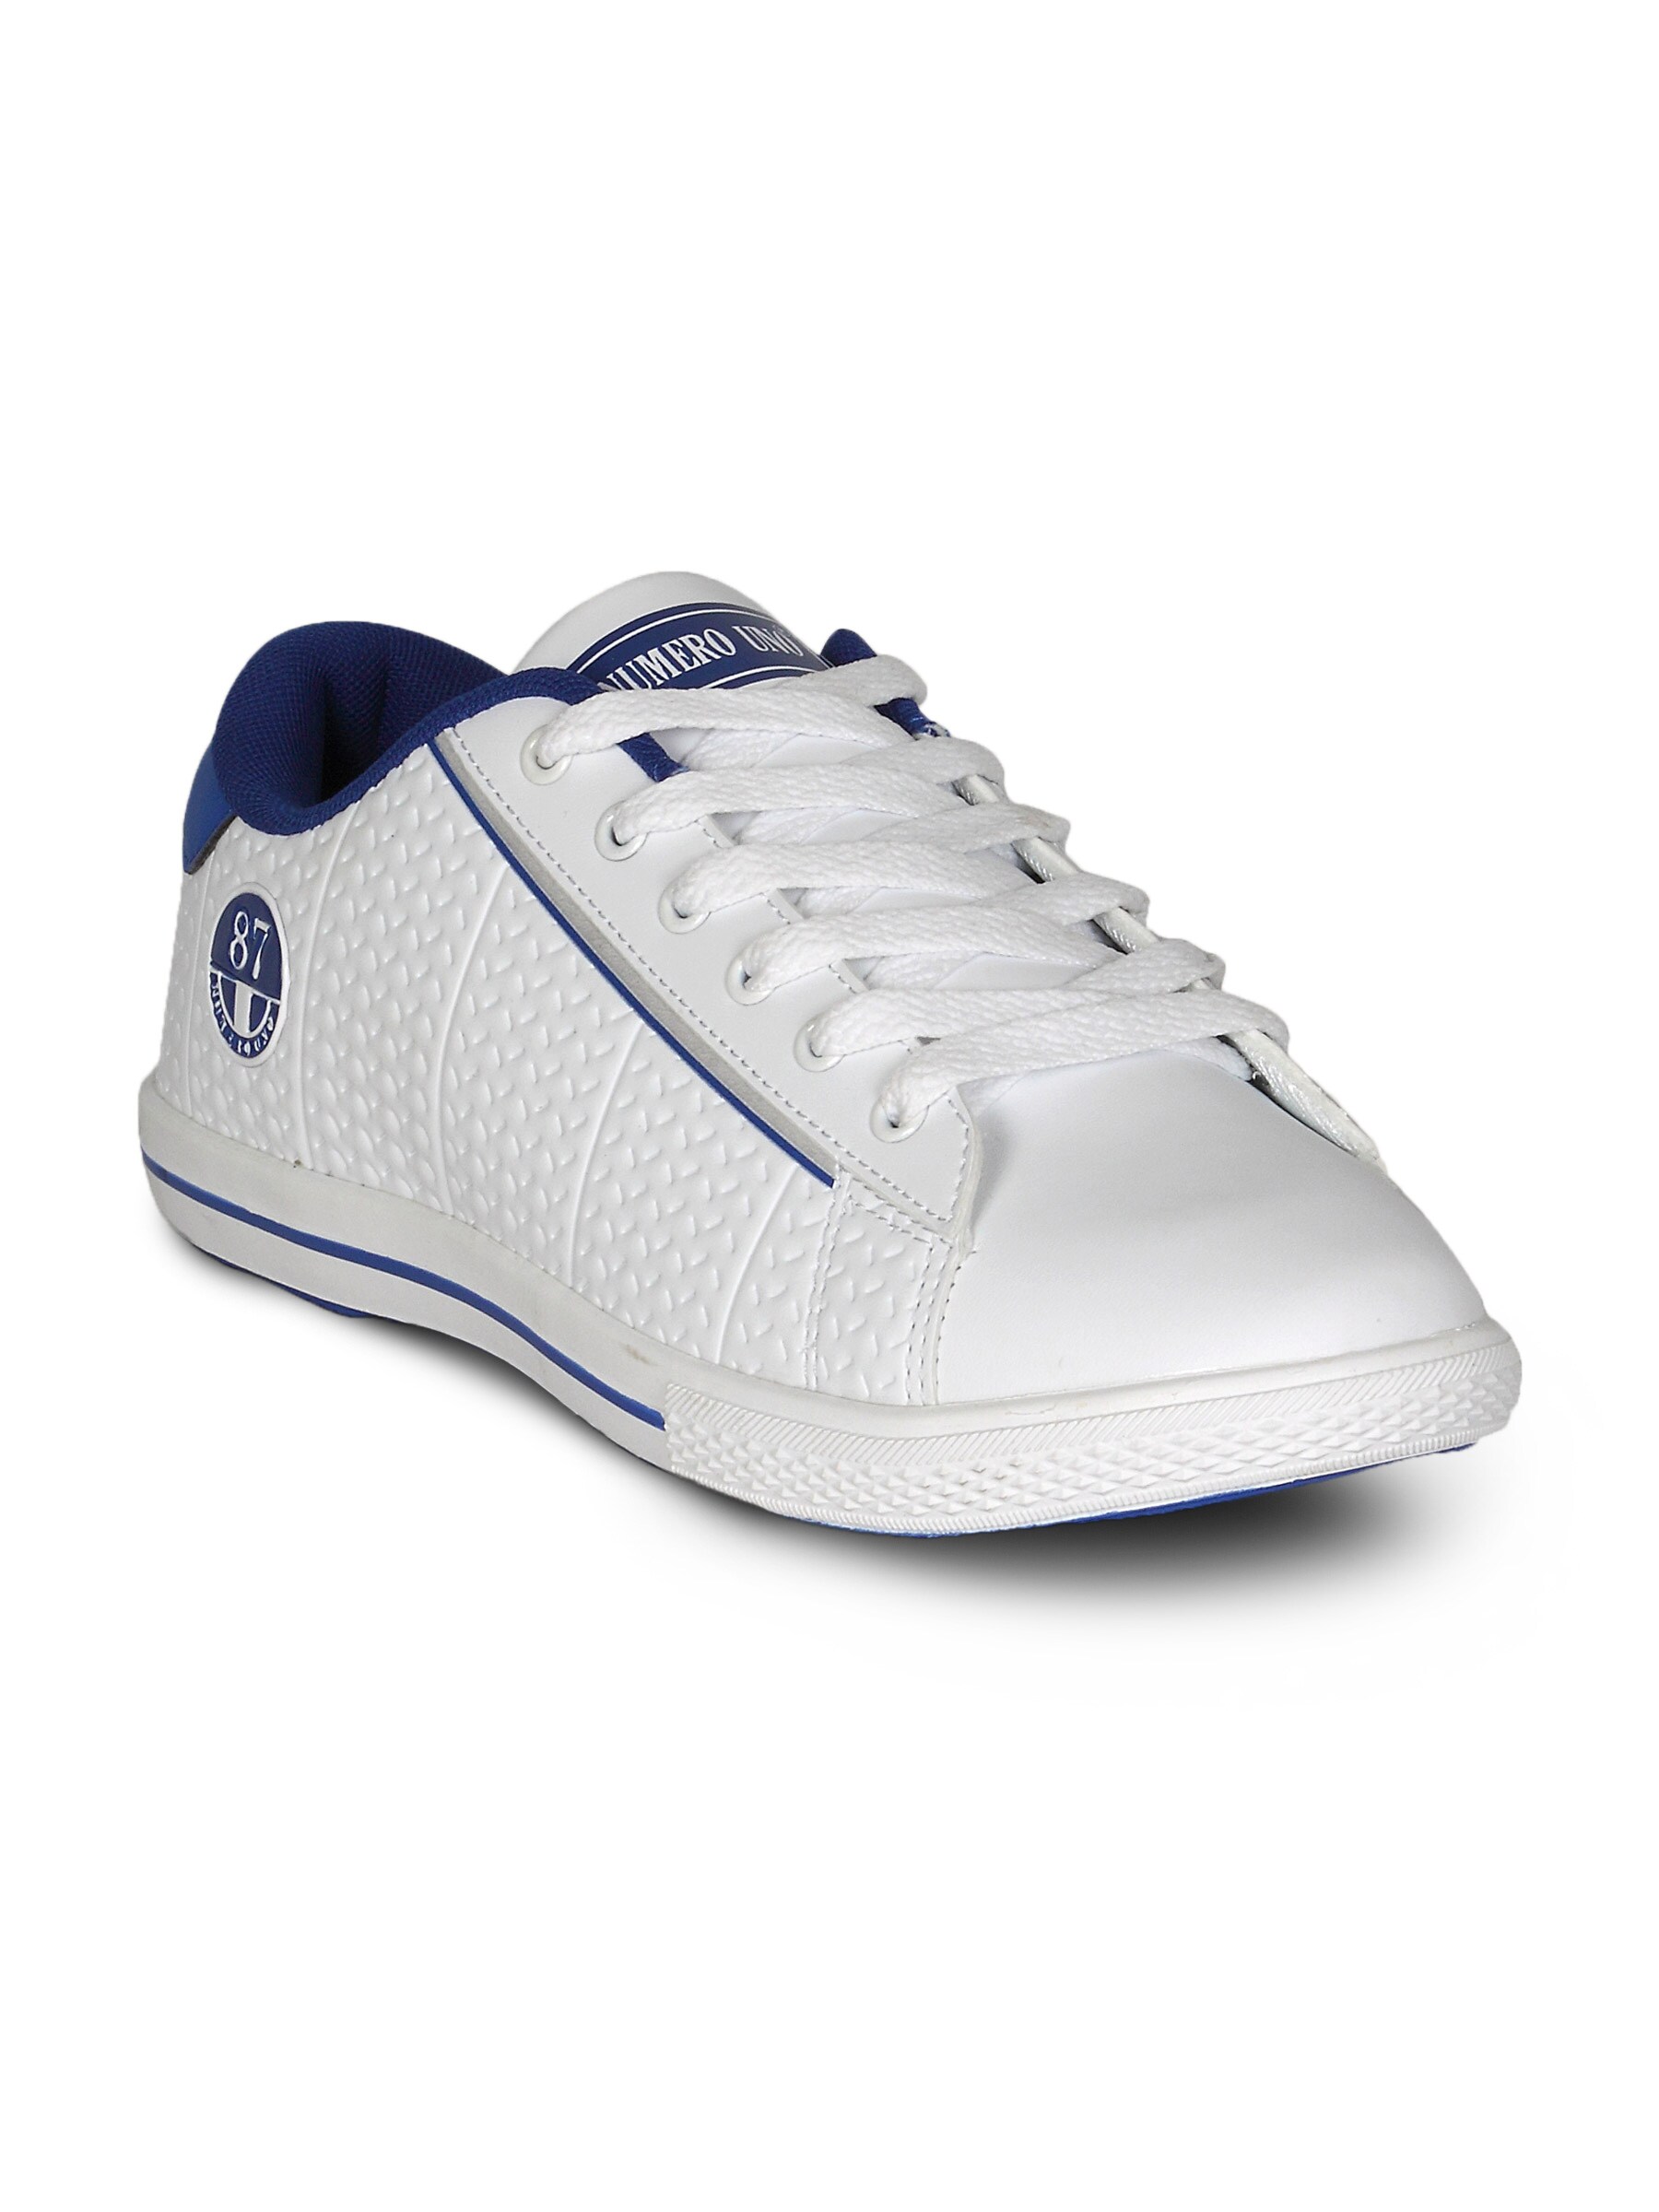 Numero Uno Men's Eco White Blue Shoe